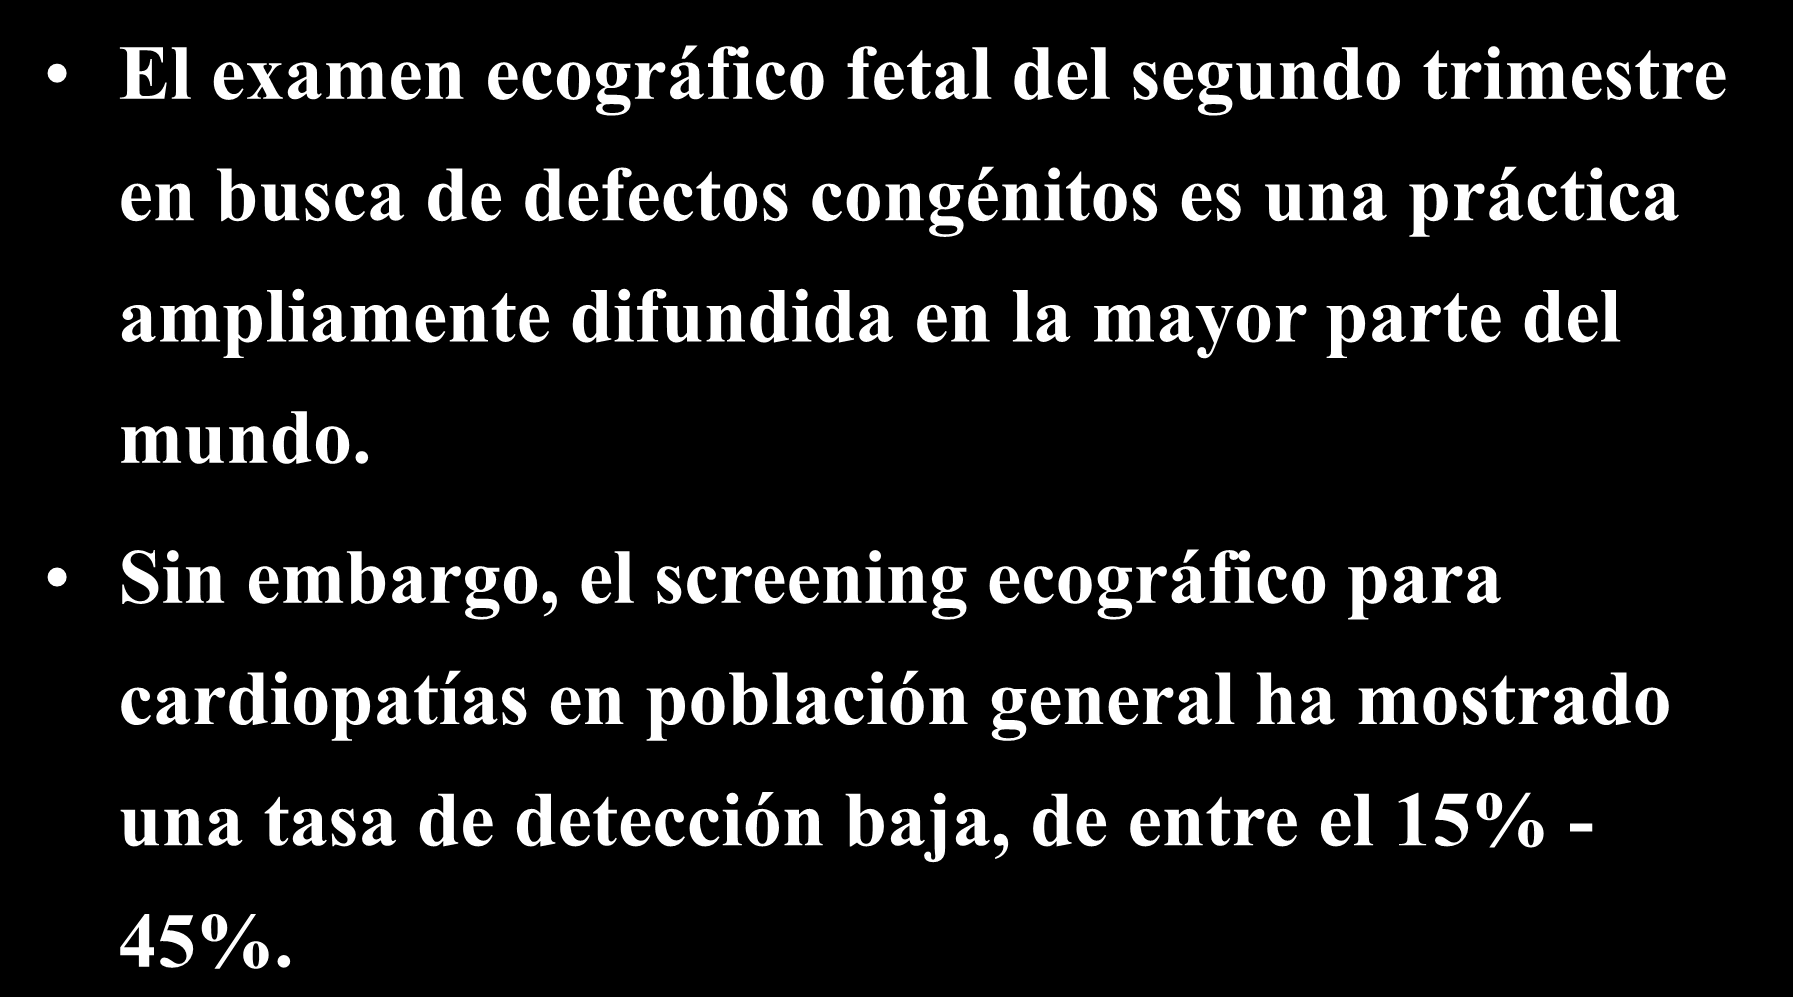 Ecocardiografía Fetal El examen ecográfico fetal del segundo trimestre en busca de defectos congénitos es una práctica ampliamente difundida en la mayor parte del mundo.